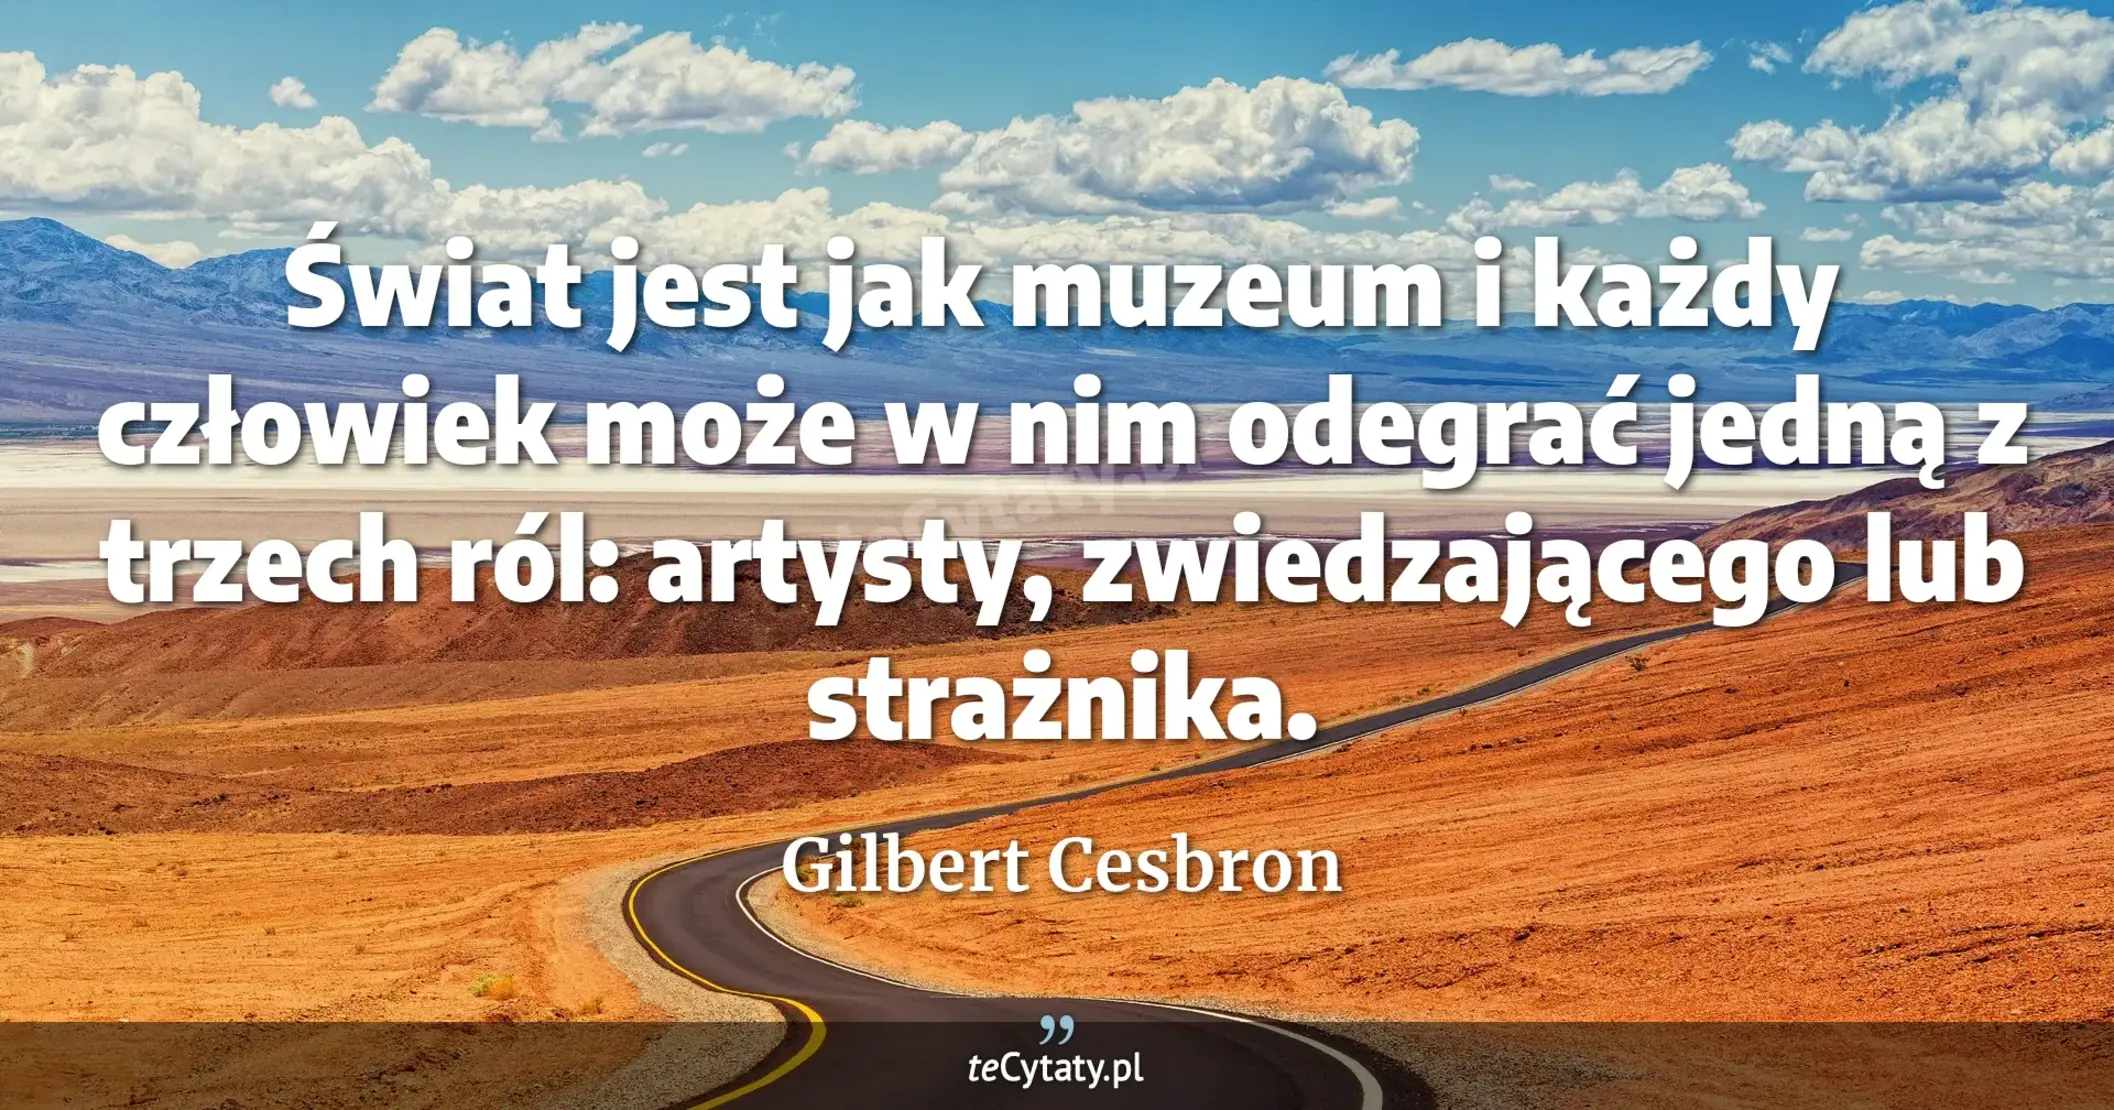 Świat jest jak muzeum i każdy człowiek może w nim odegrać jedną z trzech ról: artysty, zwiedzającego lub strażnika. - Gilbert Cesbron